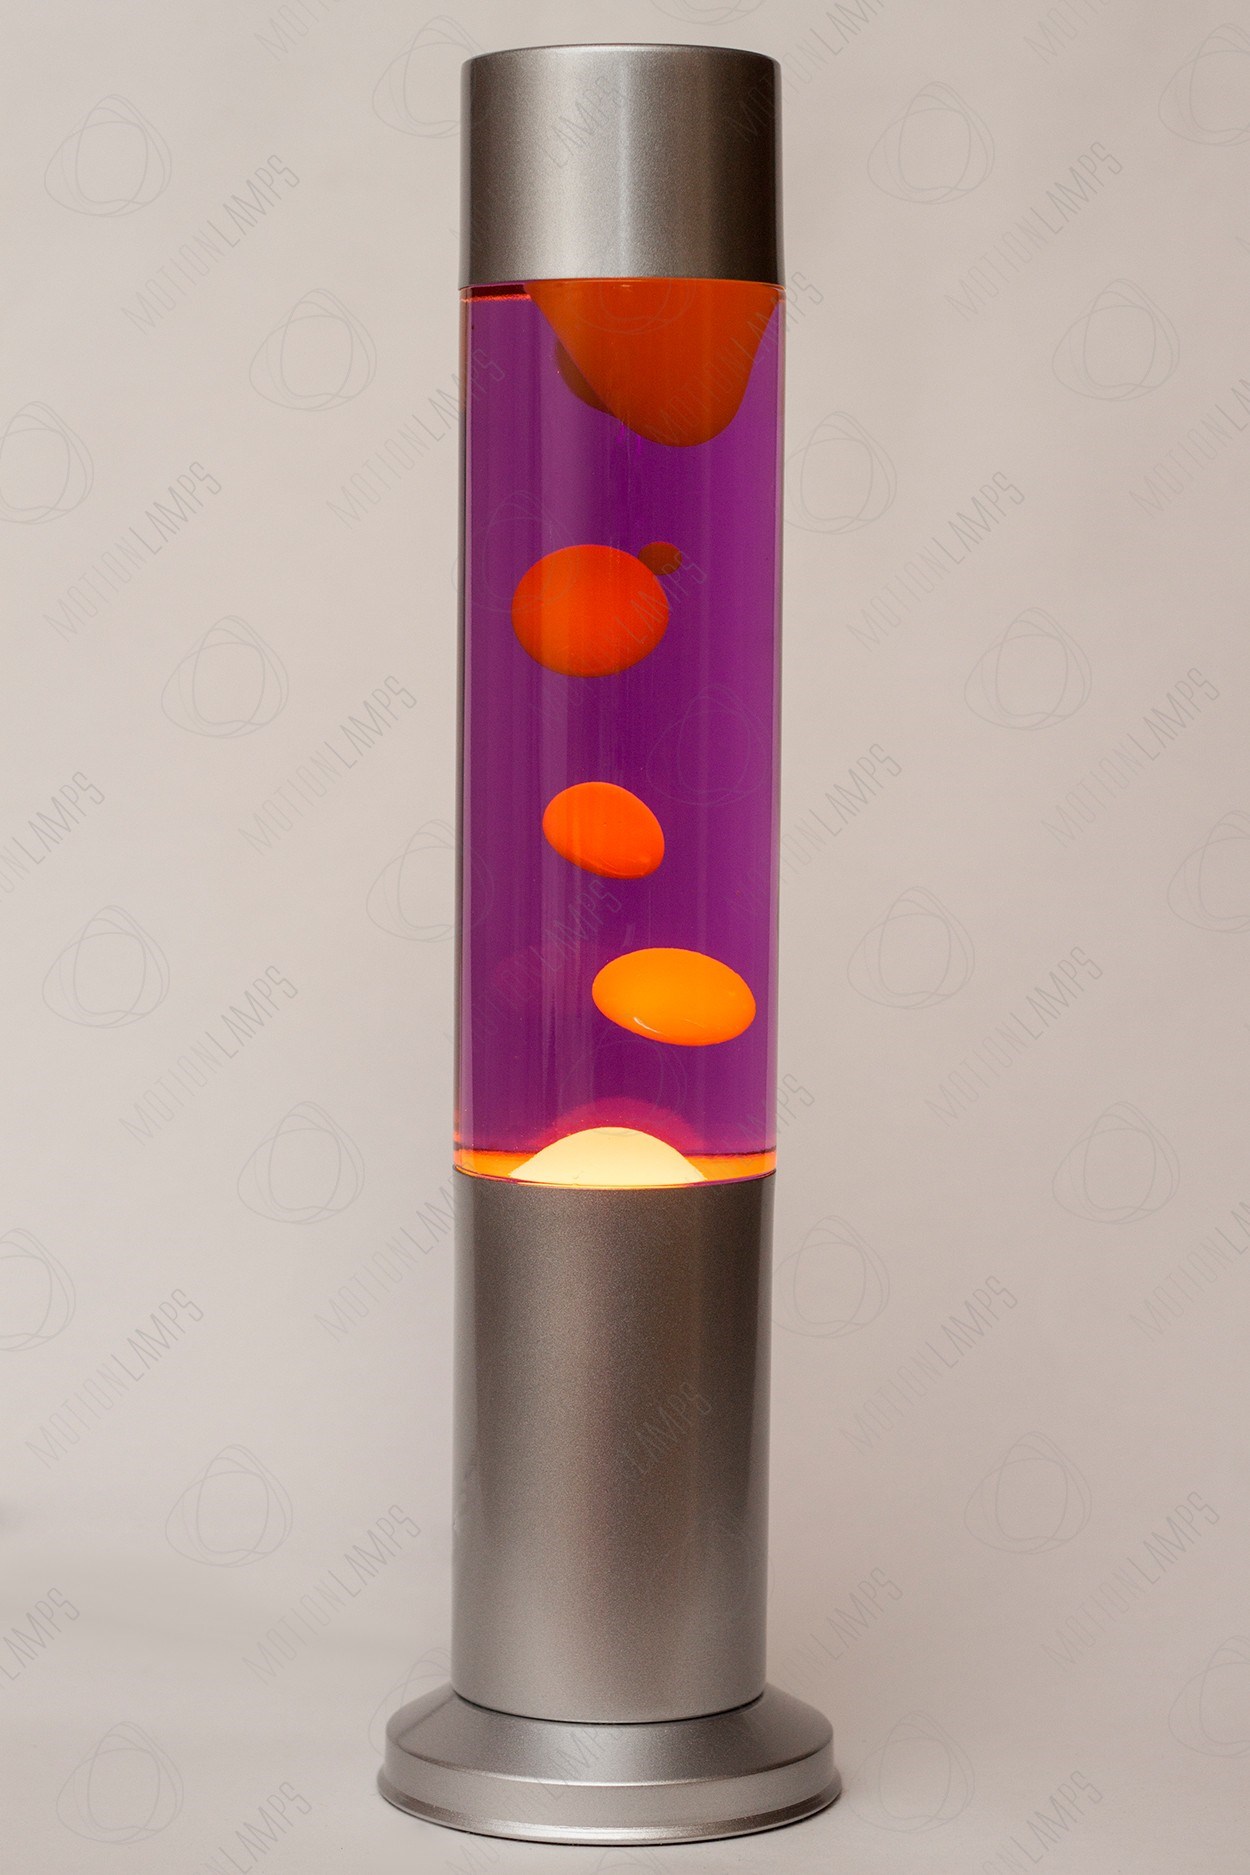 Лава-лампа 38см CL Оранжевая/Фиолетовая (Воск) |  в Подарки.ру